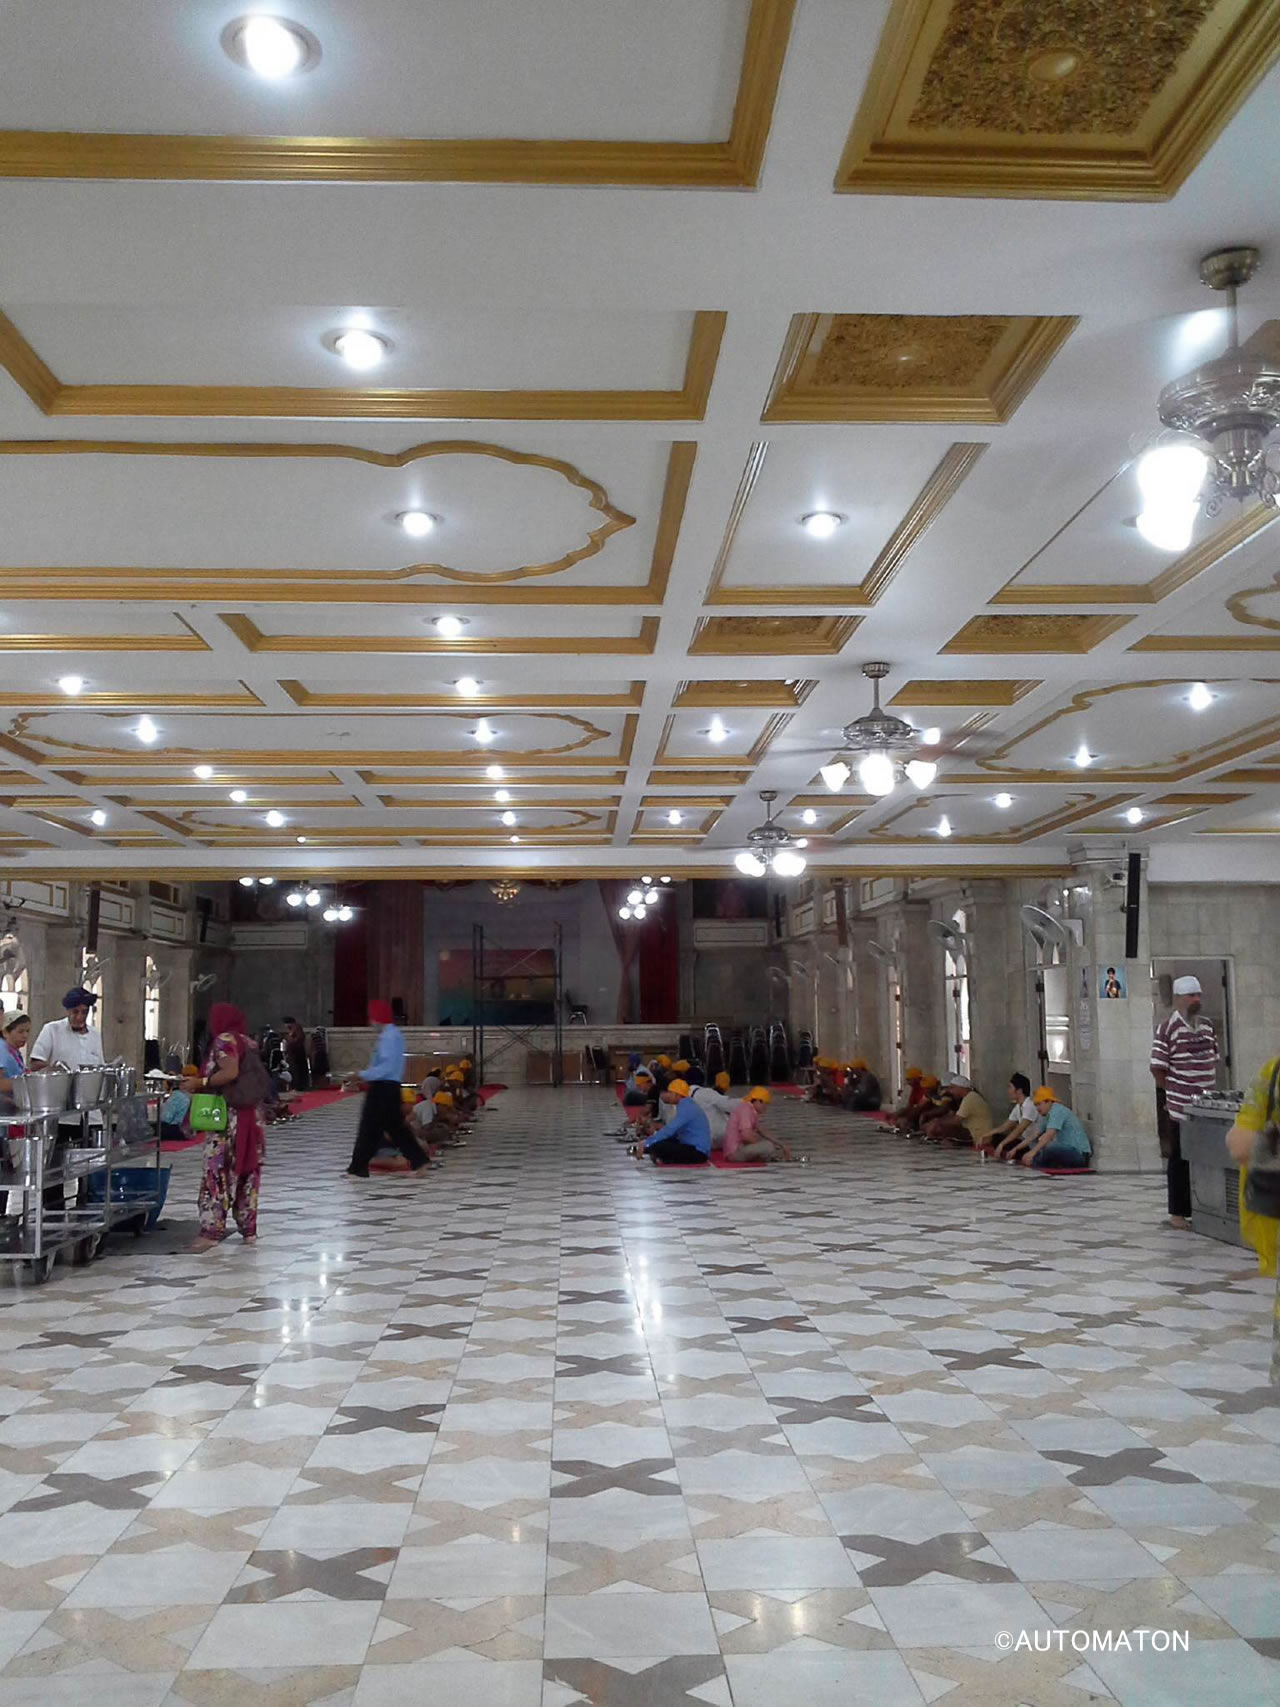 タダ飯寺の食堂。異教徒たちの黄色いバンダナが眩しすぎる光景である